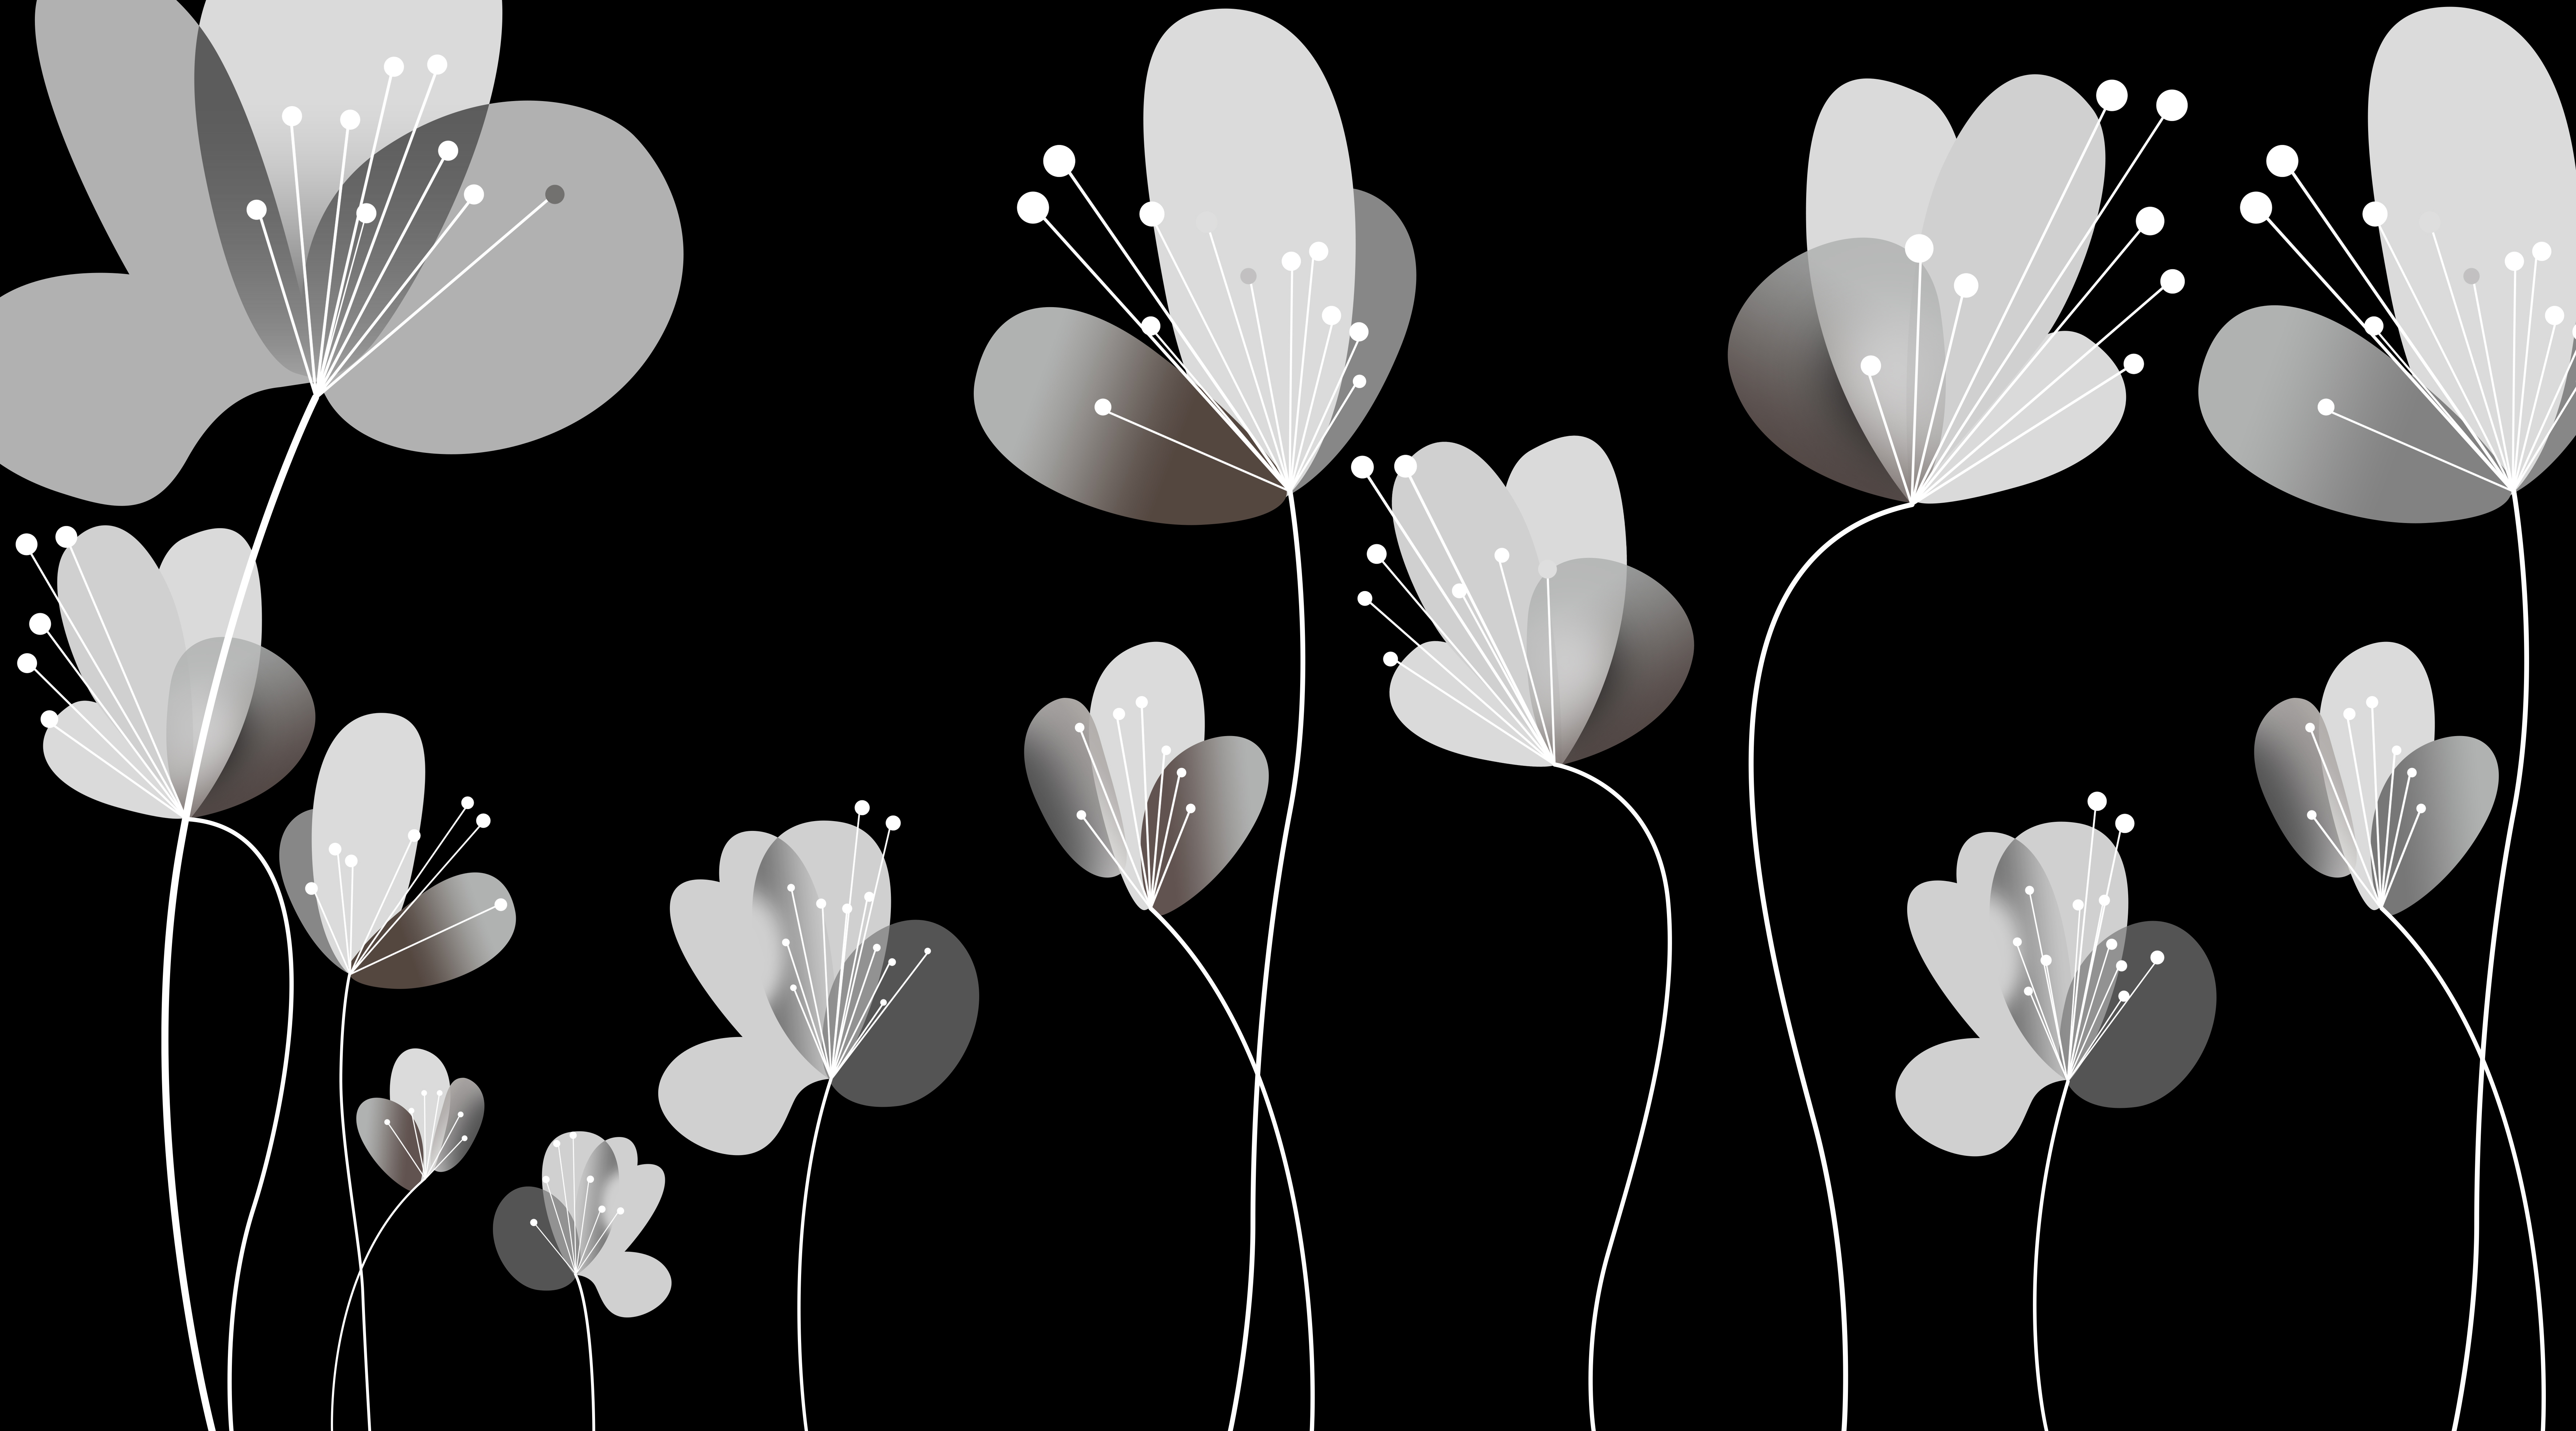 黑白抽象透明花朵 腰线 腰花  黑白 抽象 花朵 花卉 花瓣 叶子 透明 耐刮板,肤感打印,艺术玻璃,UV打印,高光系列 黑白抽象透明花朵 腰线 腰花  黑白 抽象 花朵 花卉 花瓣 叶子 透明